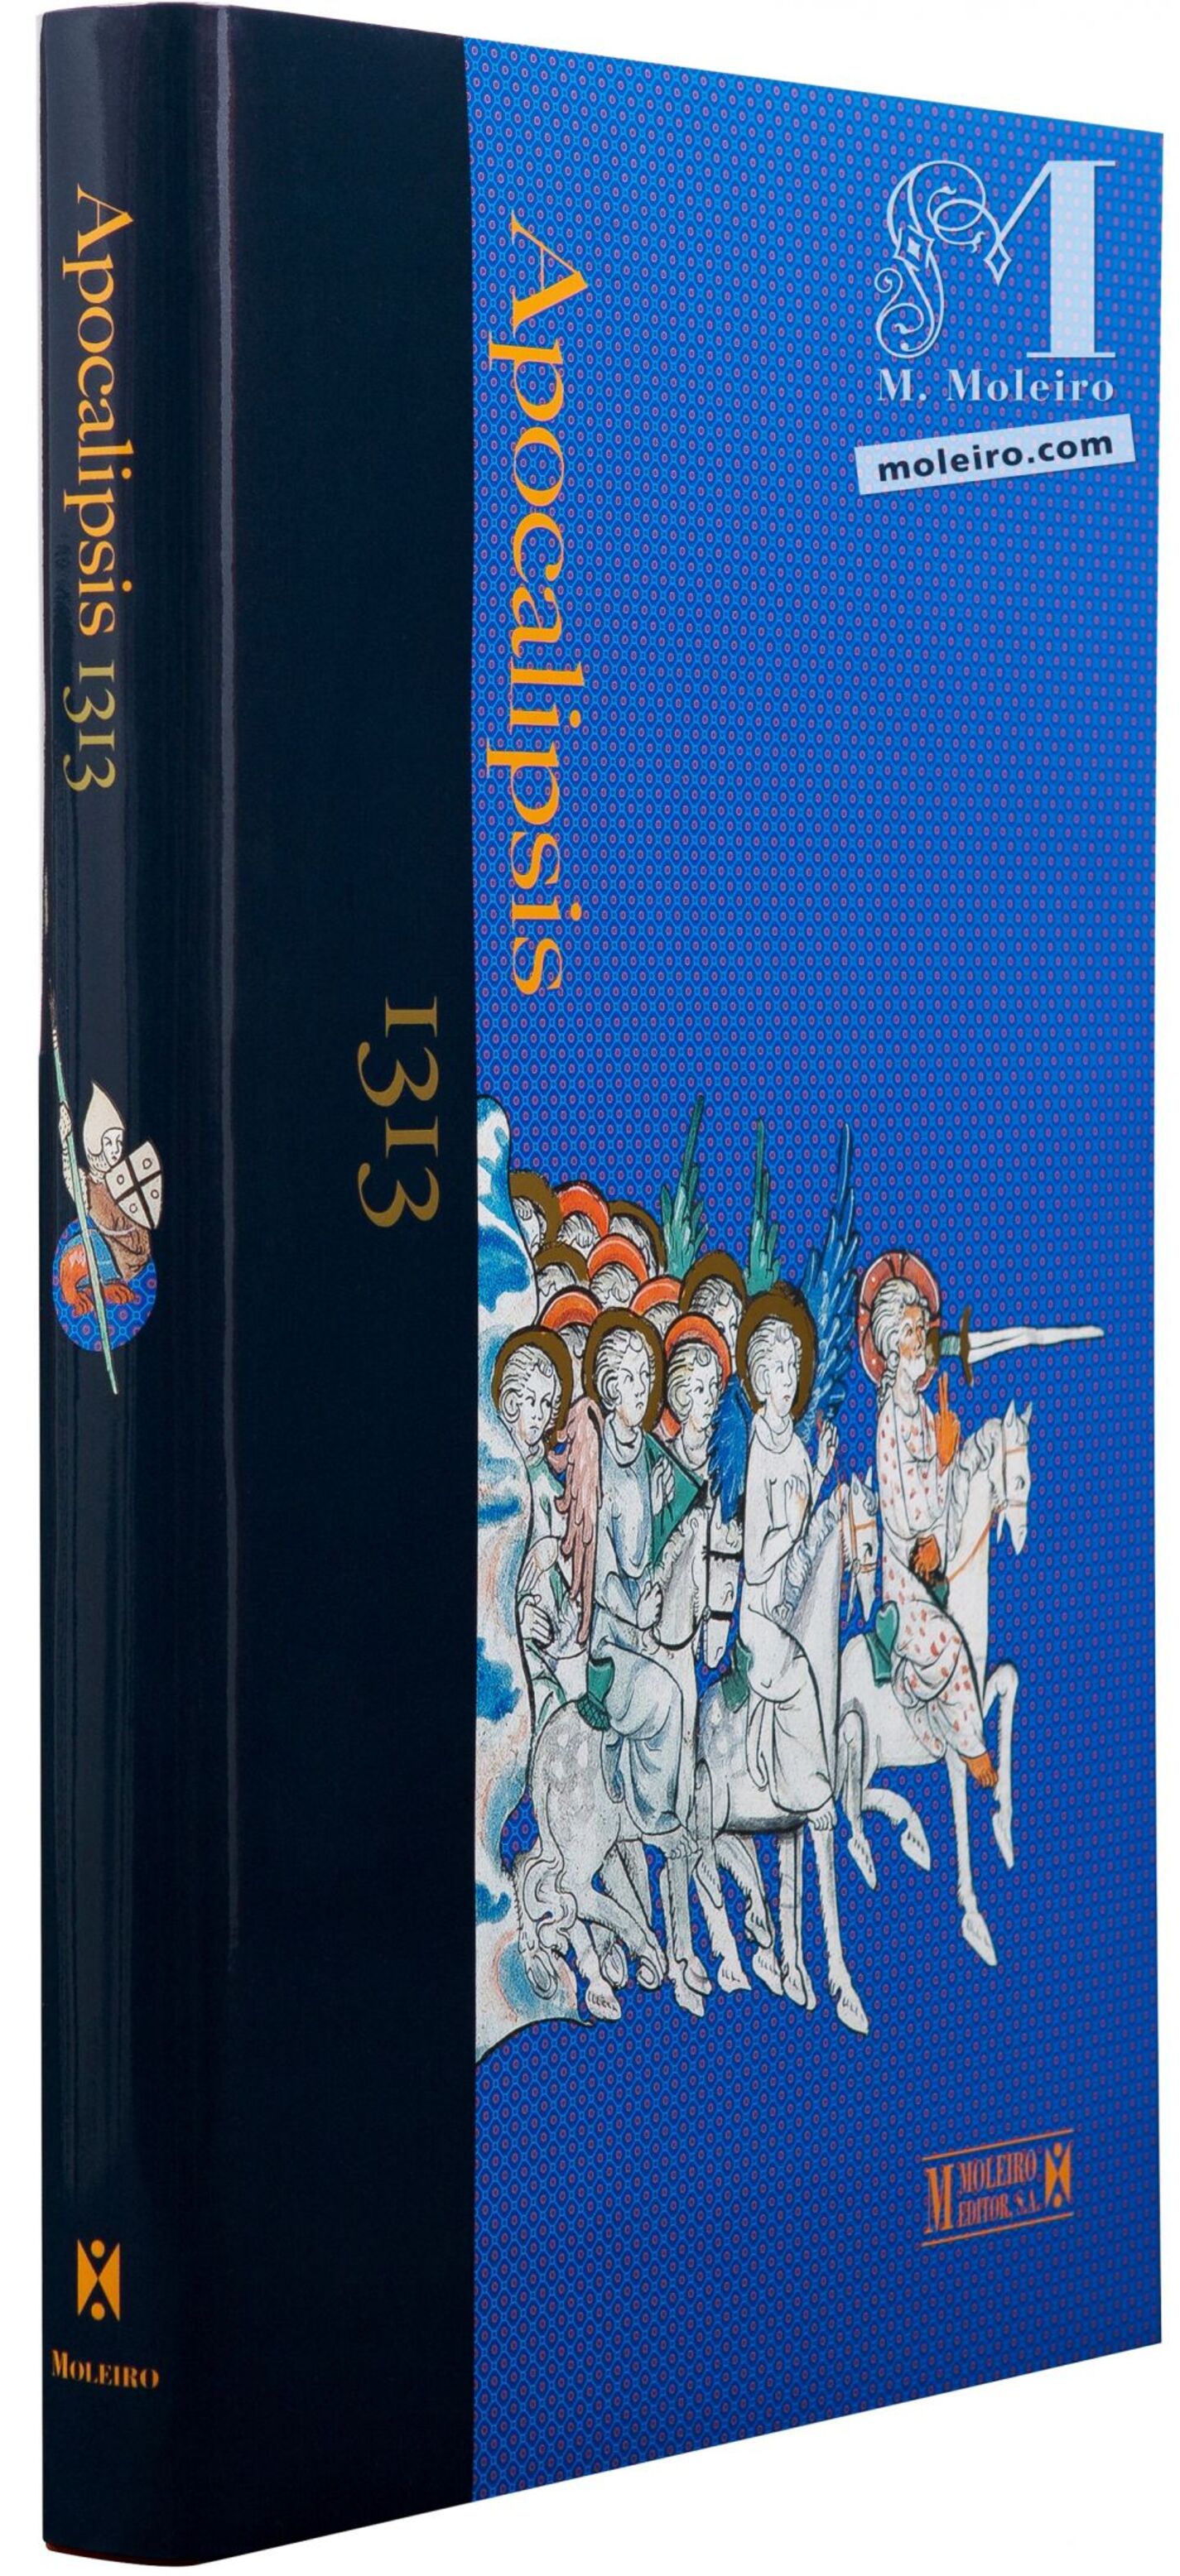 Imagen de la portada y lomo del Apocalipsis 1313 en formato libro de arte.